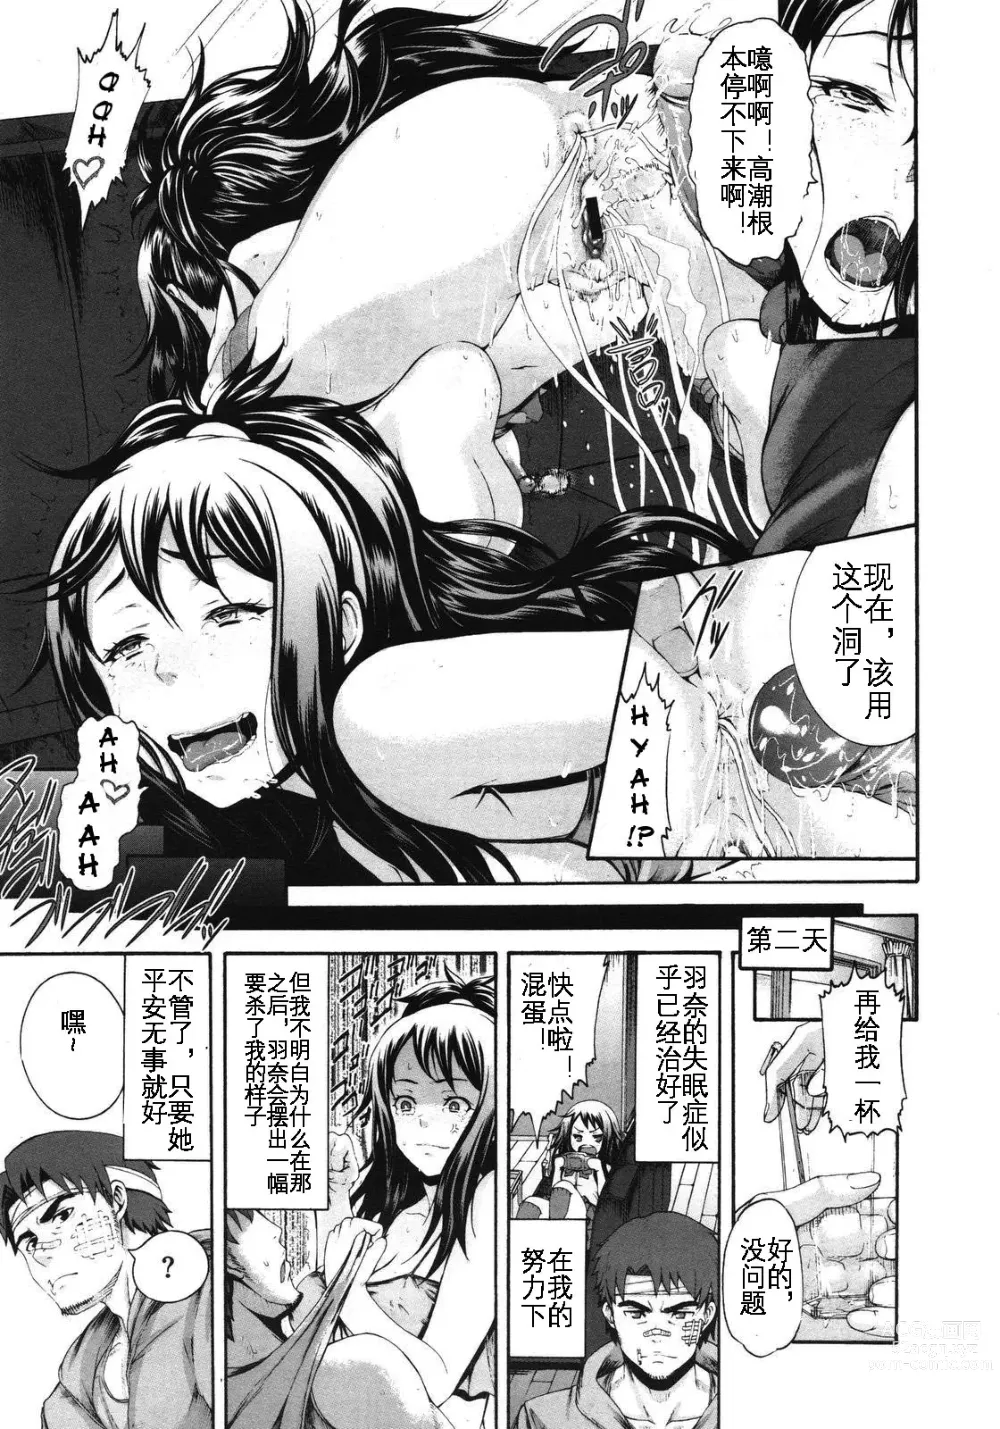 Page 24 of manga Konna Ani no Imouto Dakara   Animoca